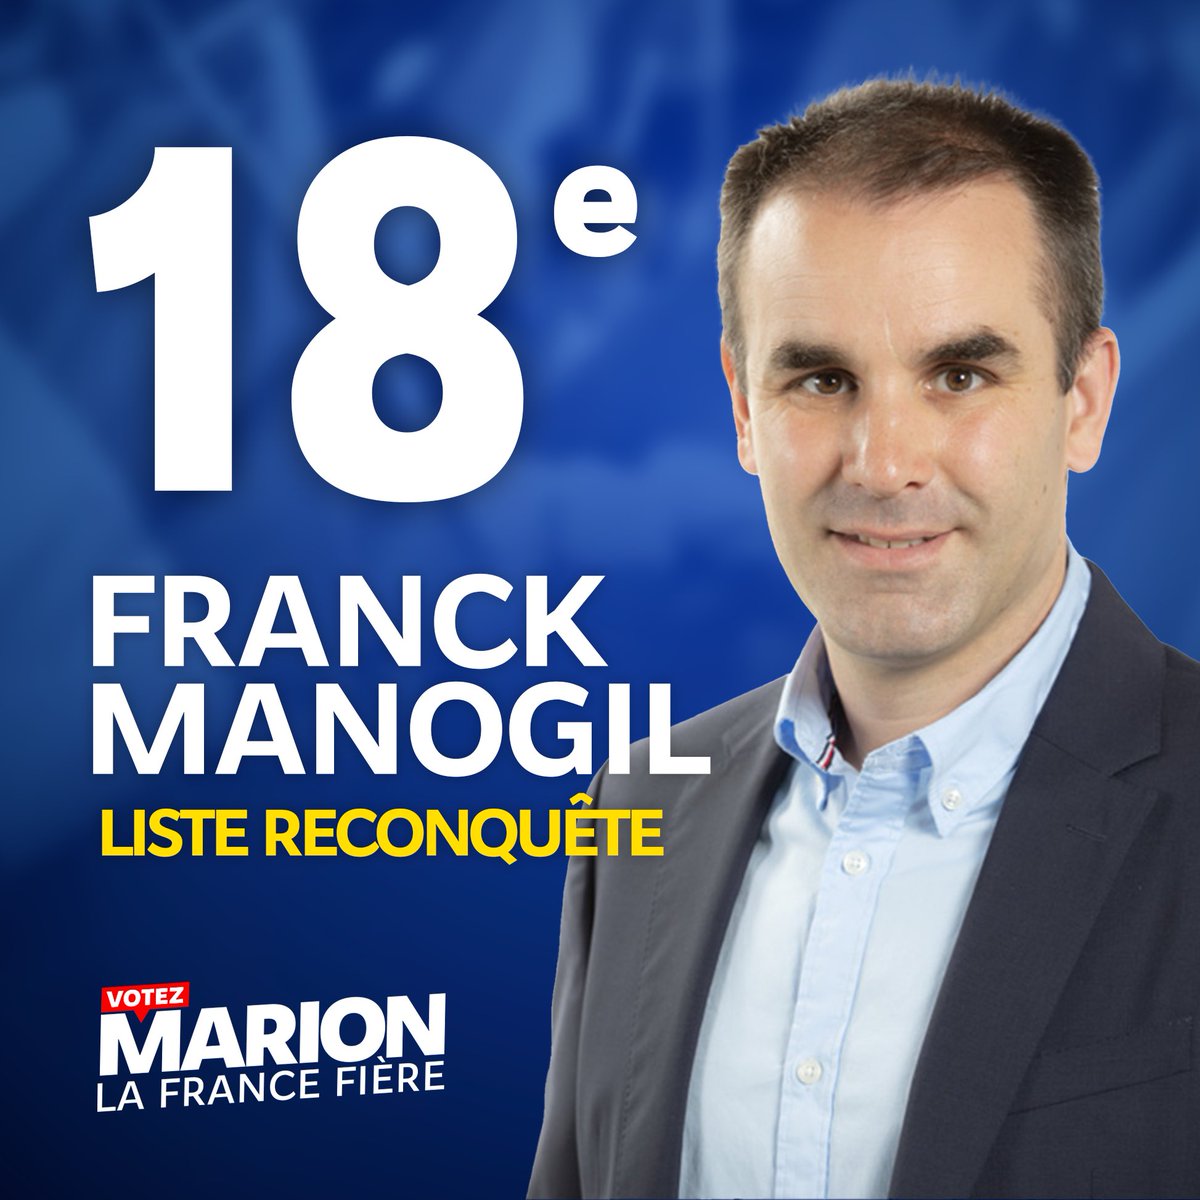 18. @franck_manogil est conseiller régional d’Occitanie et ancien conseiller départemental de Béziers. Il a 41 ans et vient de l’Hérault.